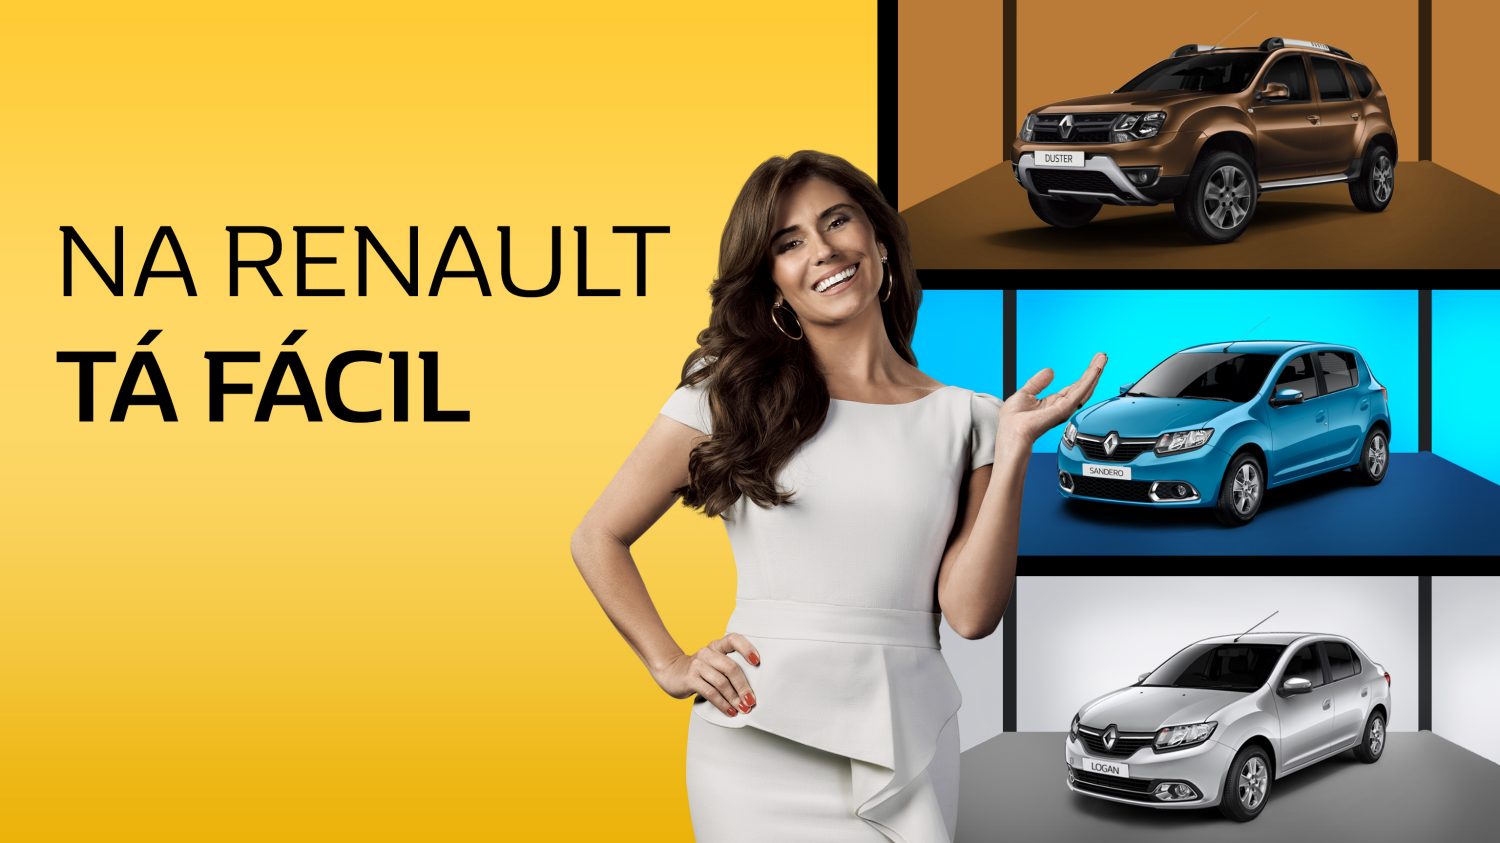 Financeira Renault: Como funcionam seus empréstimos?